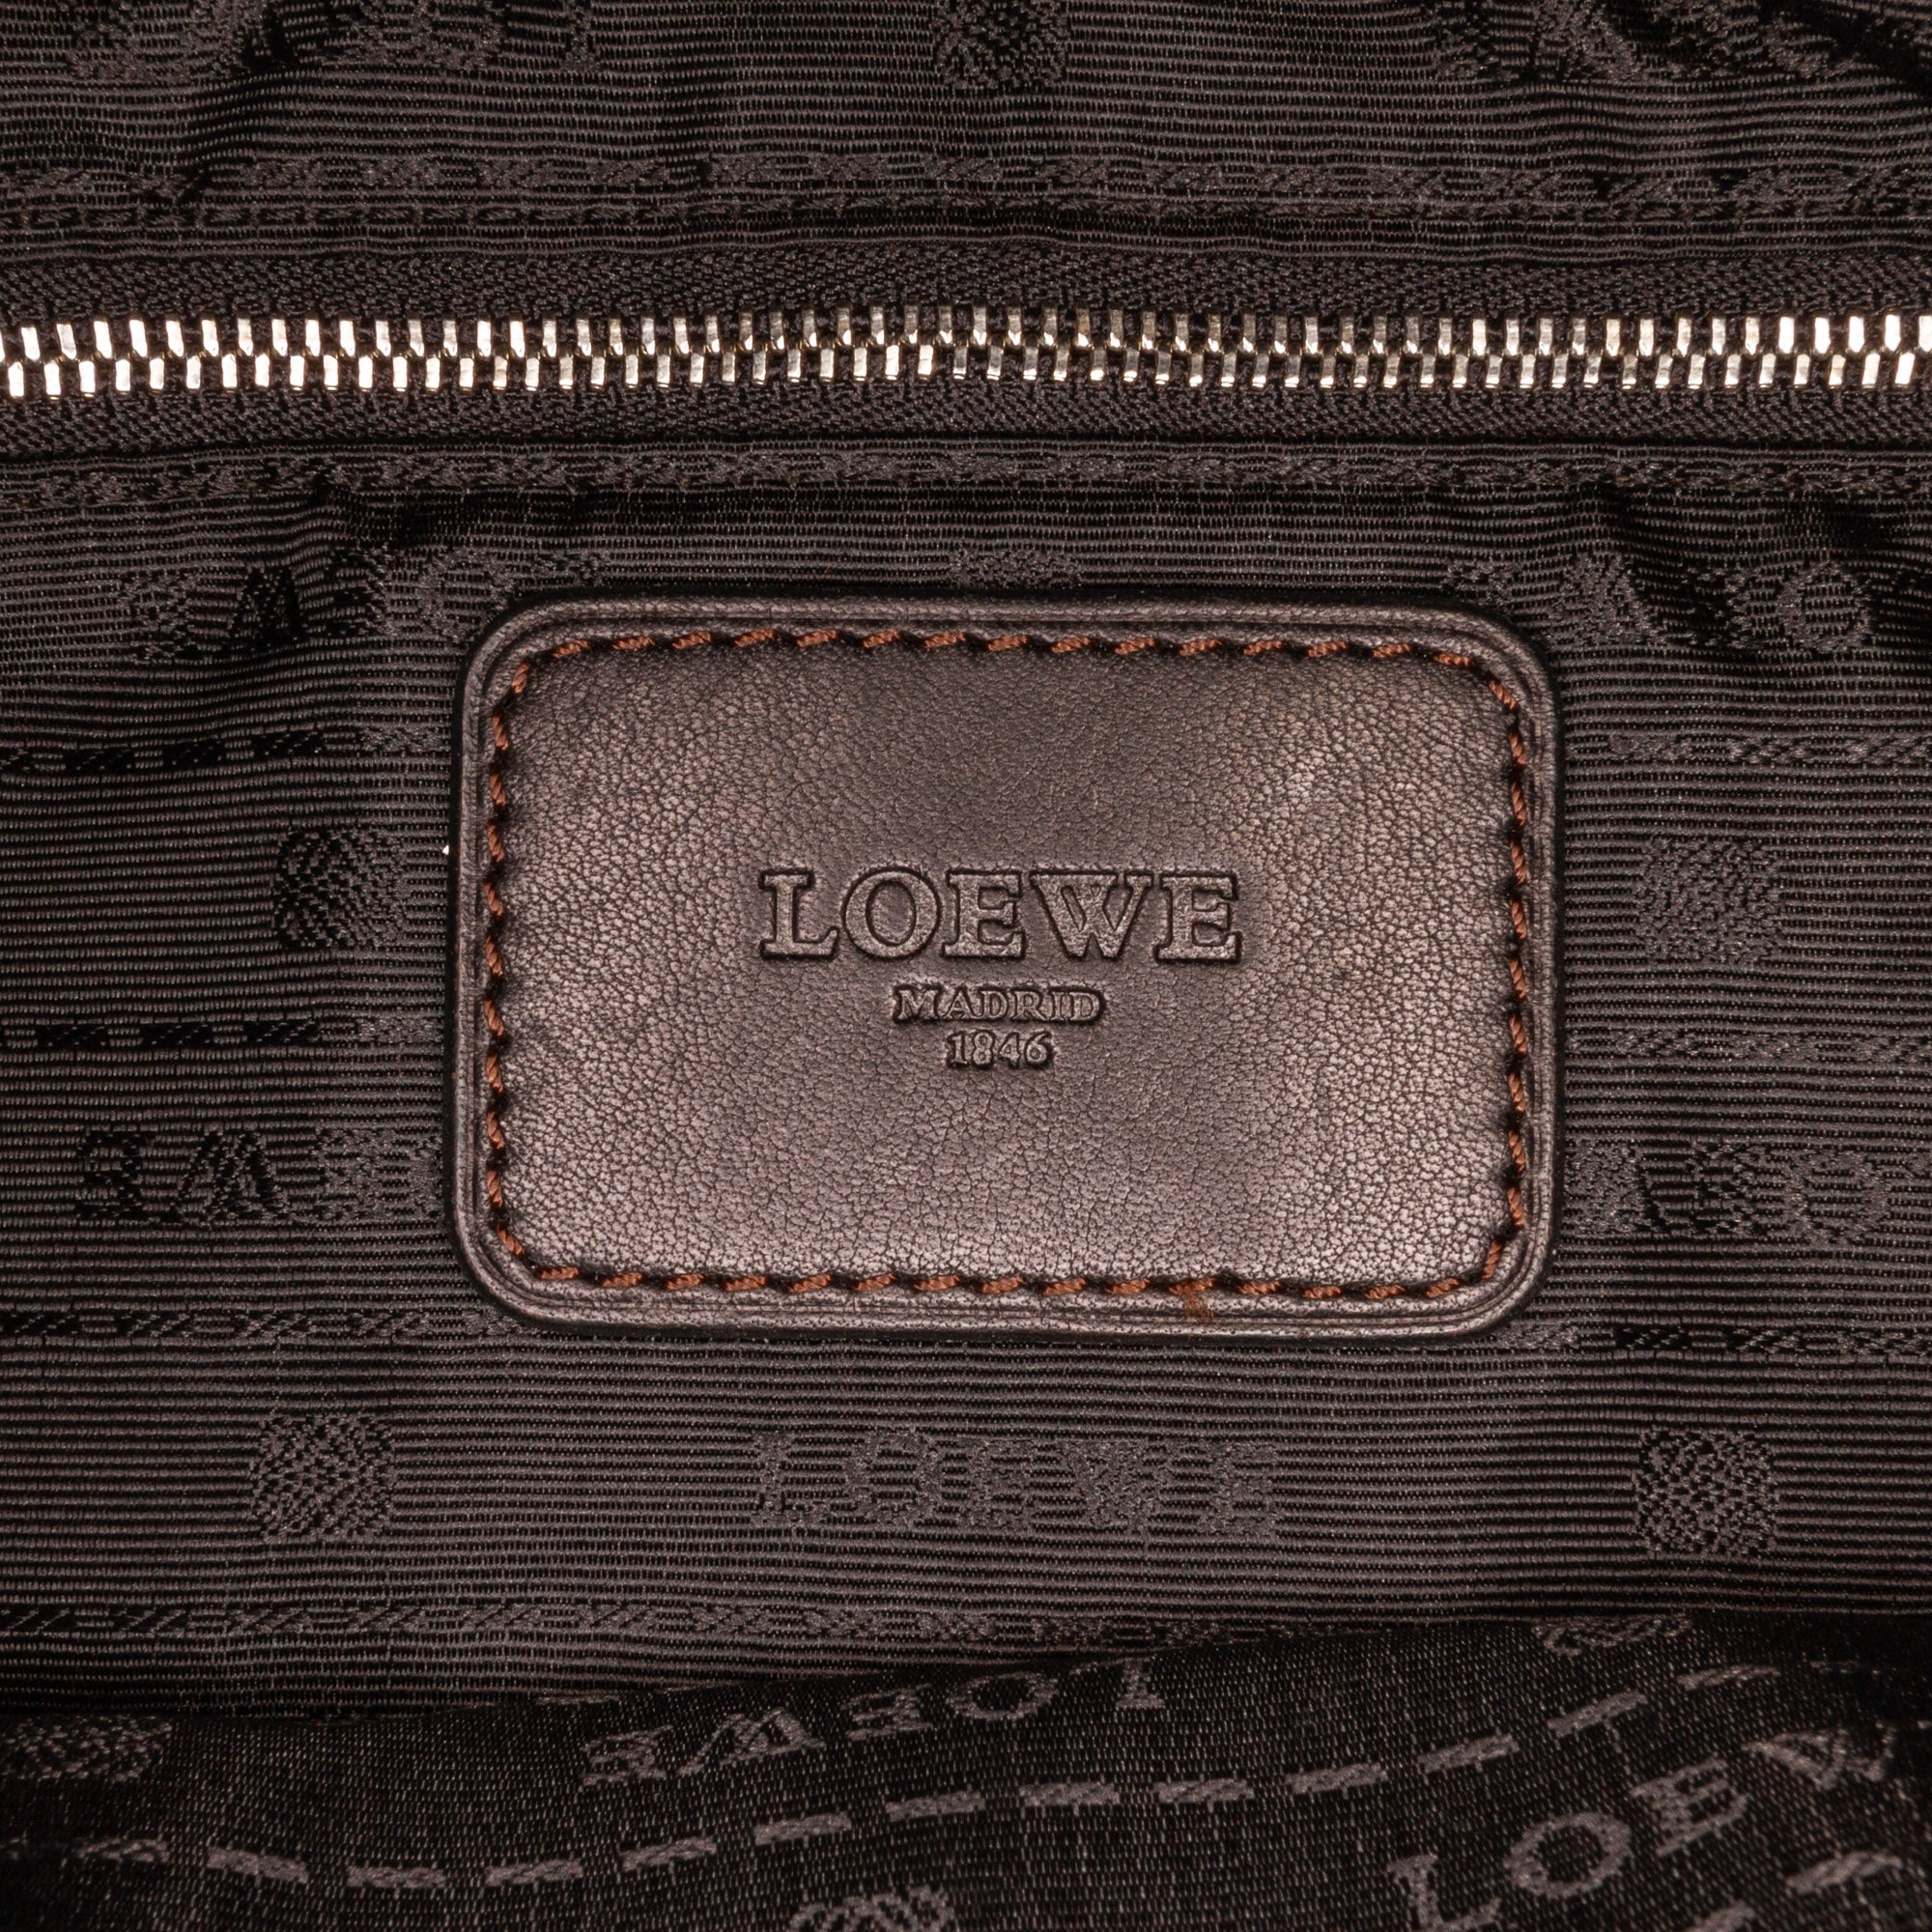 LOEWE BAG VINTAGE Crossbody leather Messenger Anagram Shoulder brown